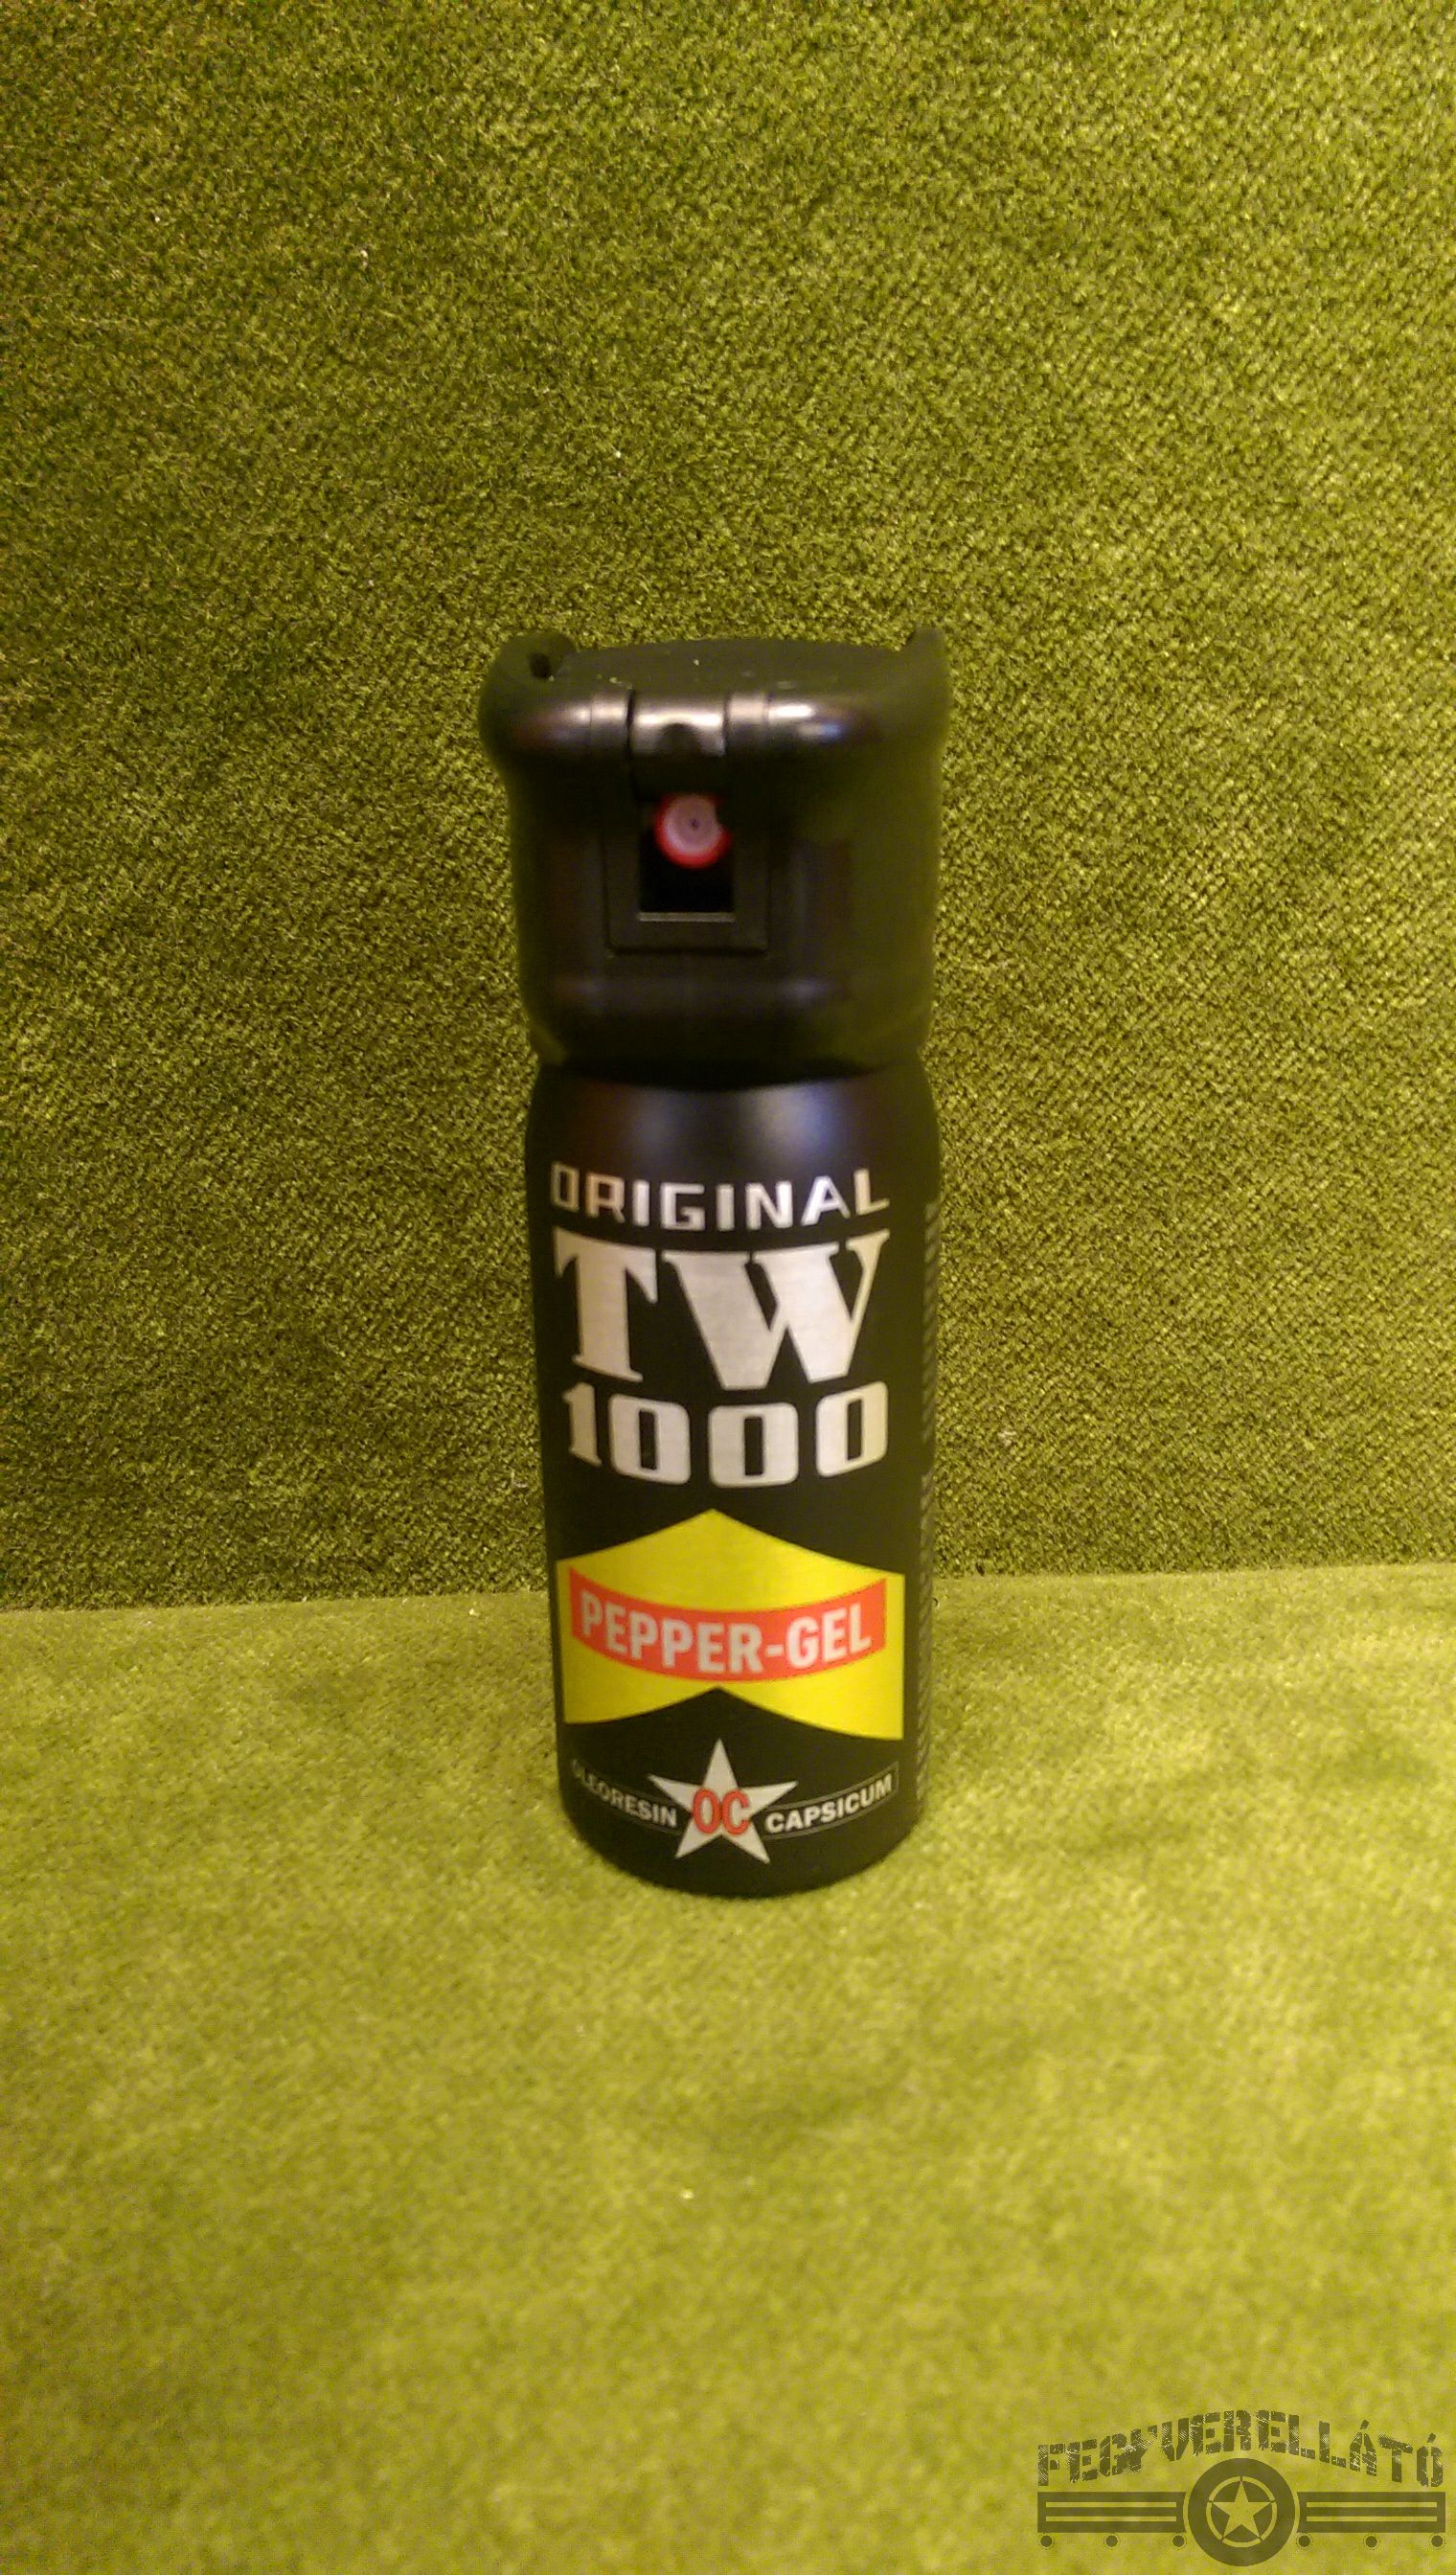 TW1000, Pepper, GEL, 50 ml